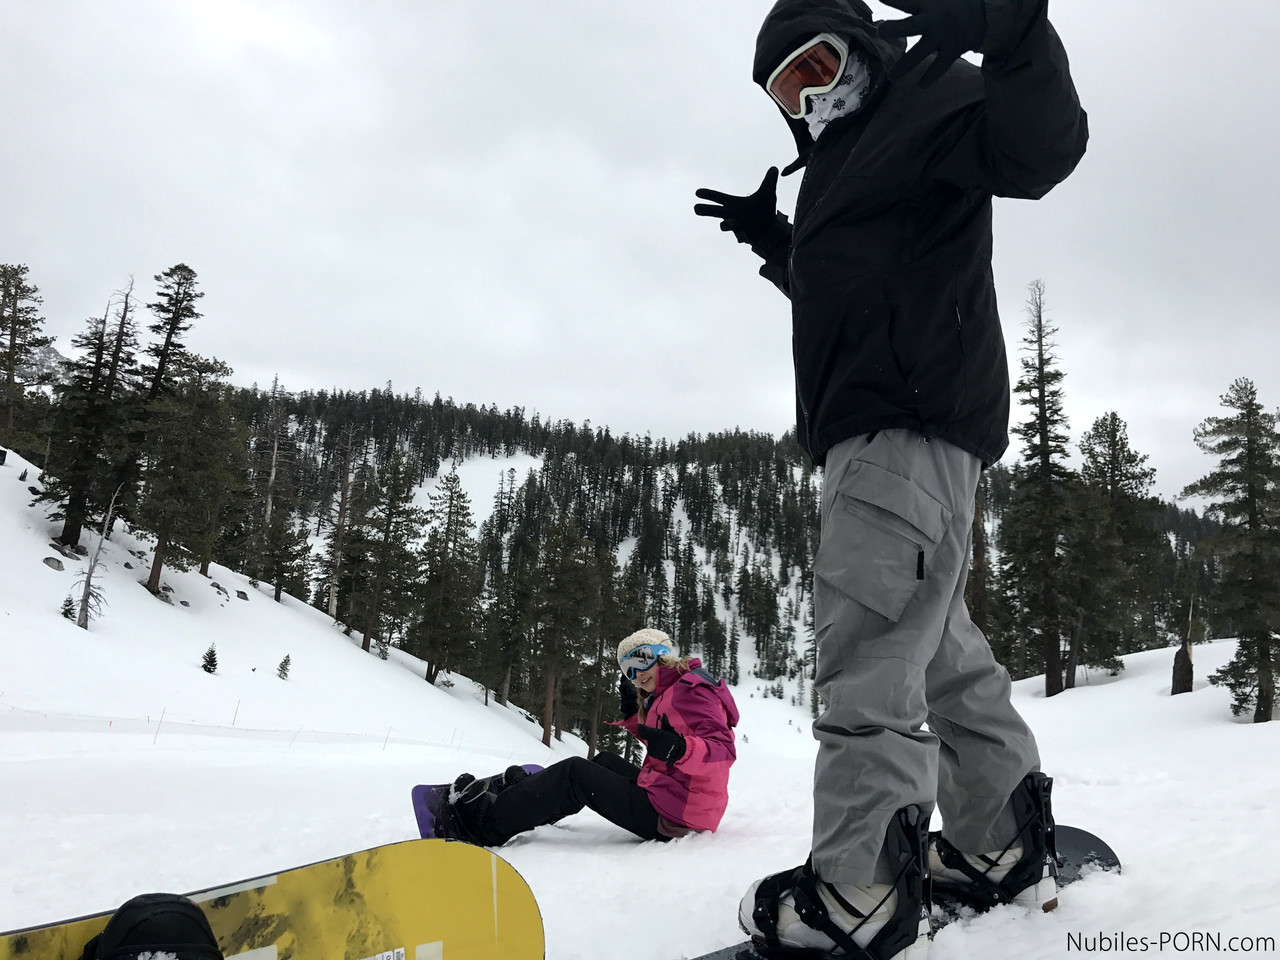 Sexy snowboarders Sierra Nicole & Kristen Scott have pre-FFM fun on the slopes foto porno #426855010